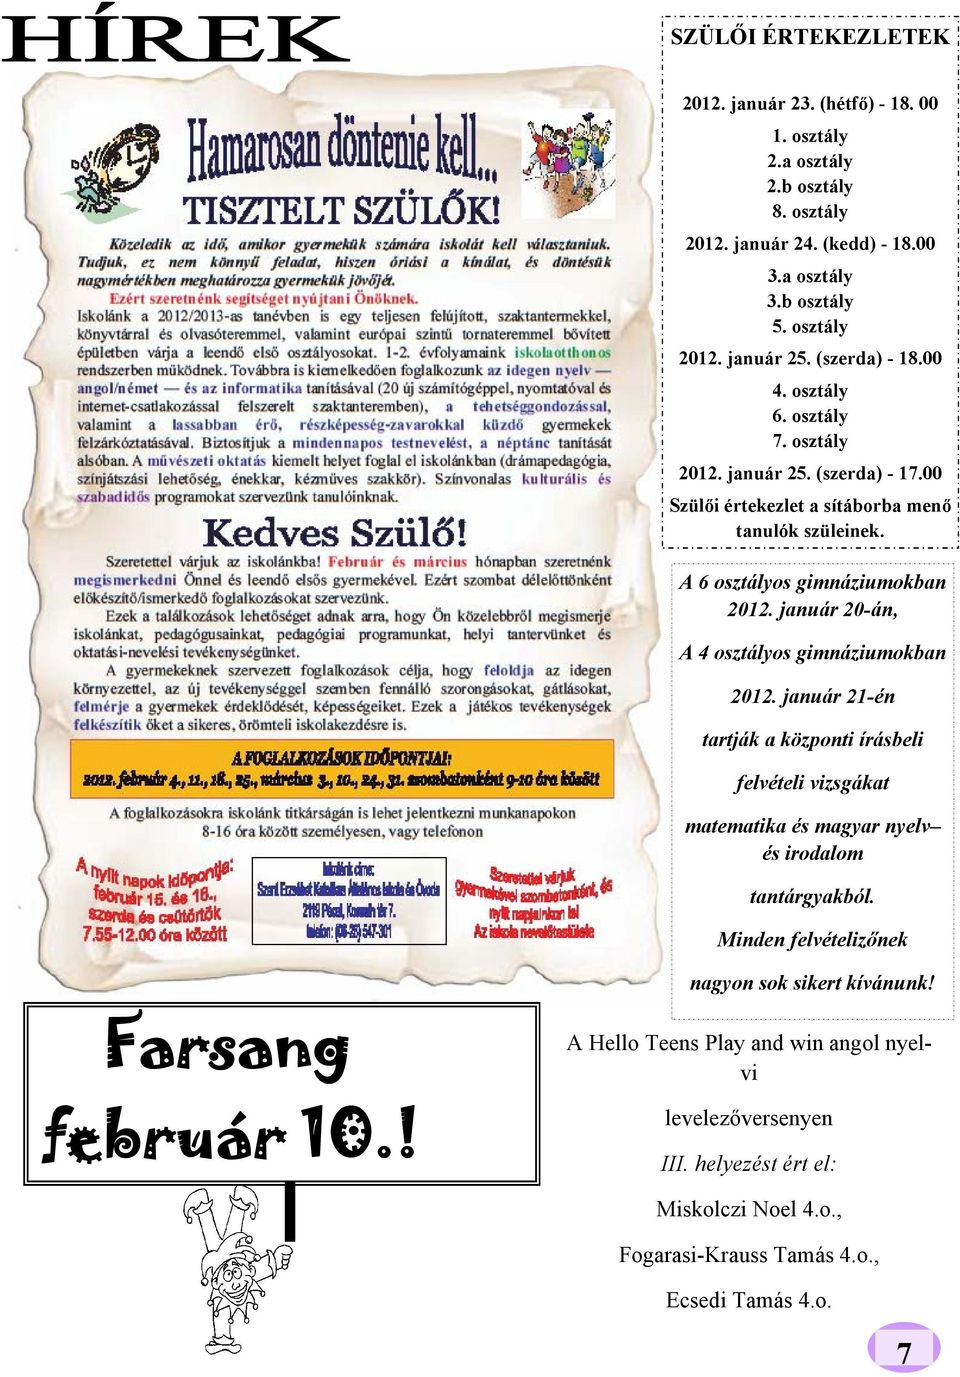 január 20-án, A 4 osztályos gimnáziumokban 2012. január 21-én tartják a központi írásbeli felvételi vizsgákat matematika és magyar nyelv és irodalom tantárgyakból.